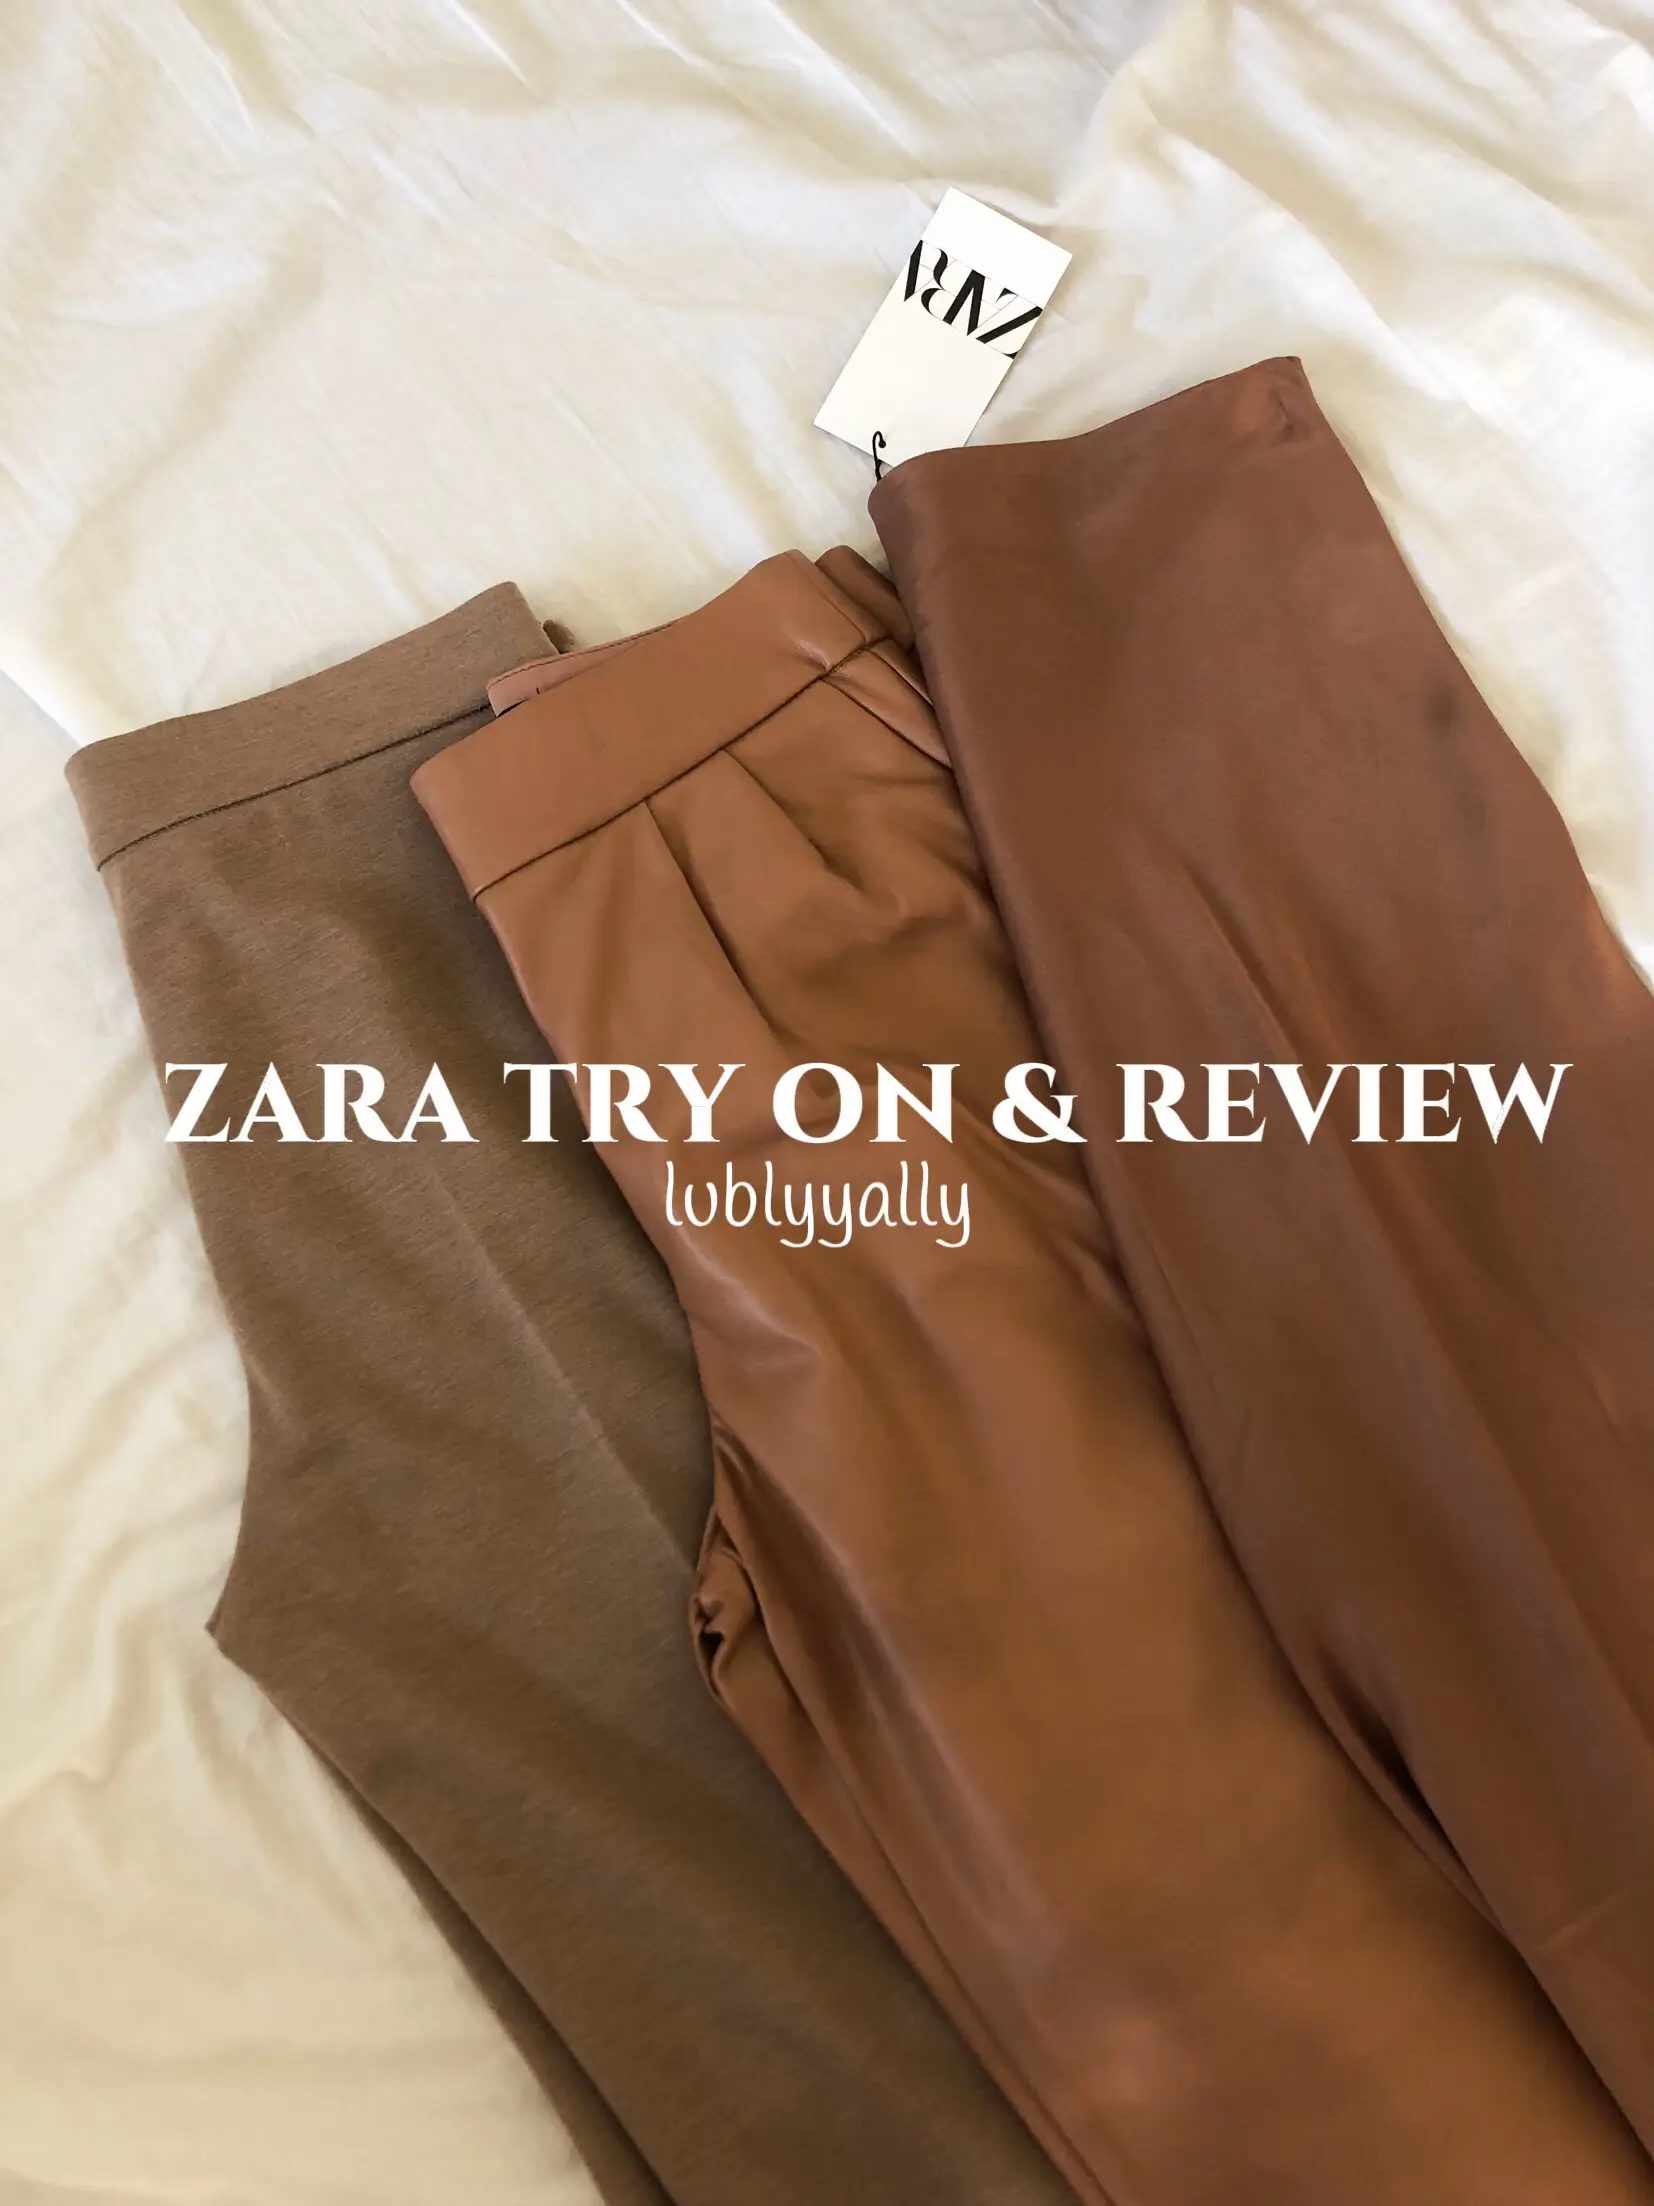 me 🤝🏽 detailed size reviews #zara #zaratryon